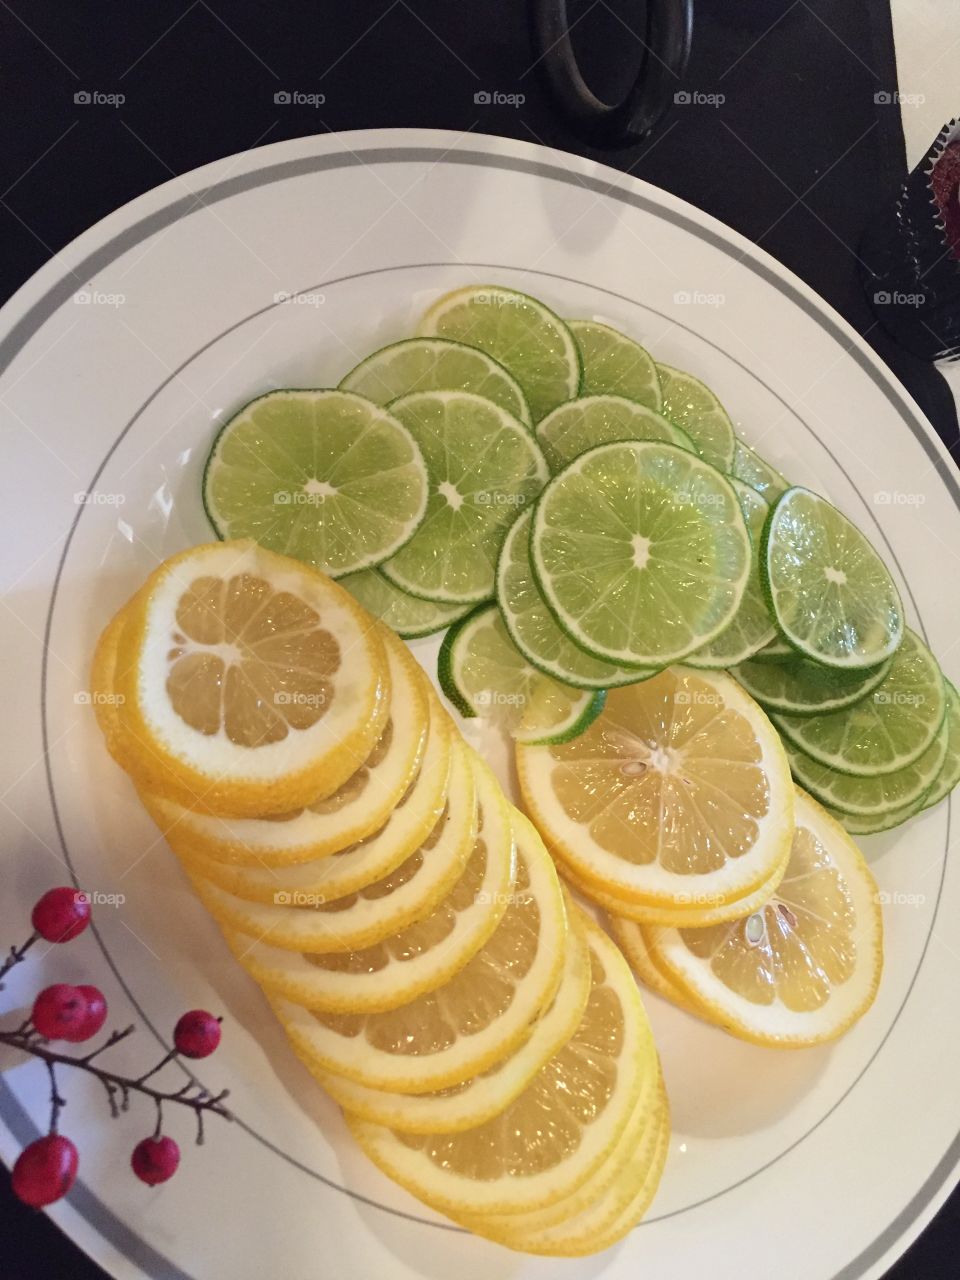 Lemon and limes